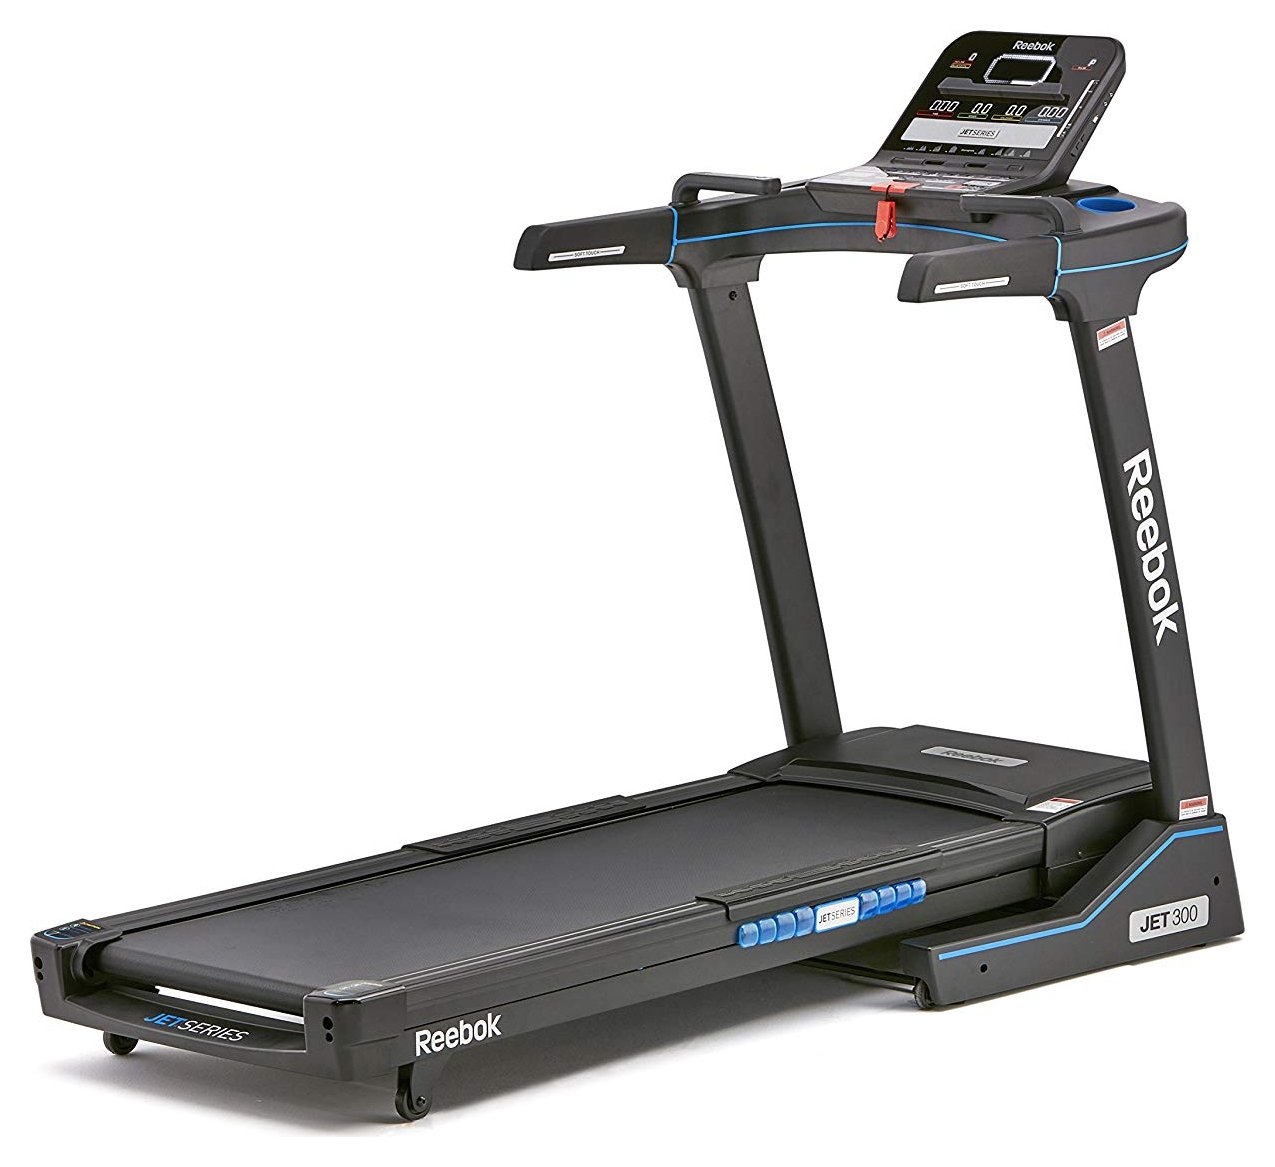 zjet 460 reebok treadmill price